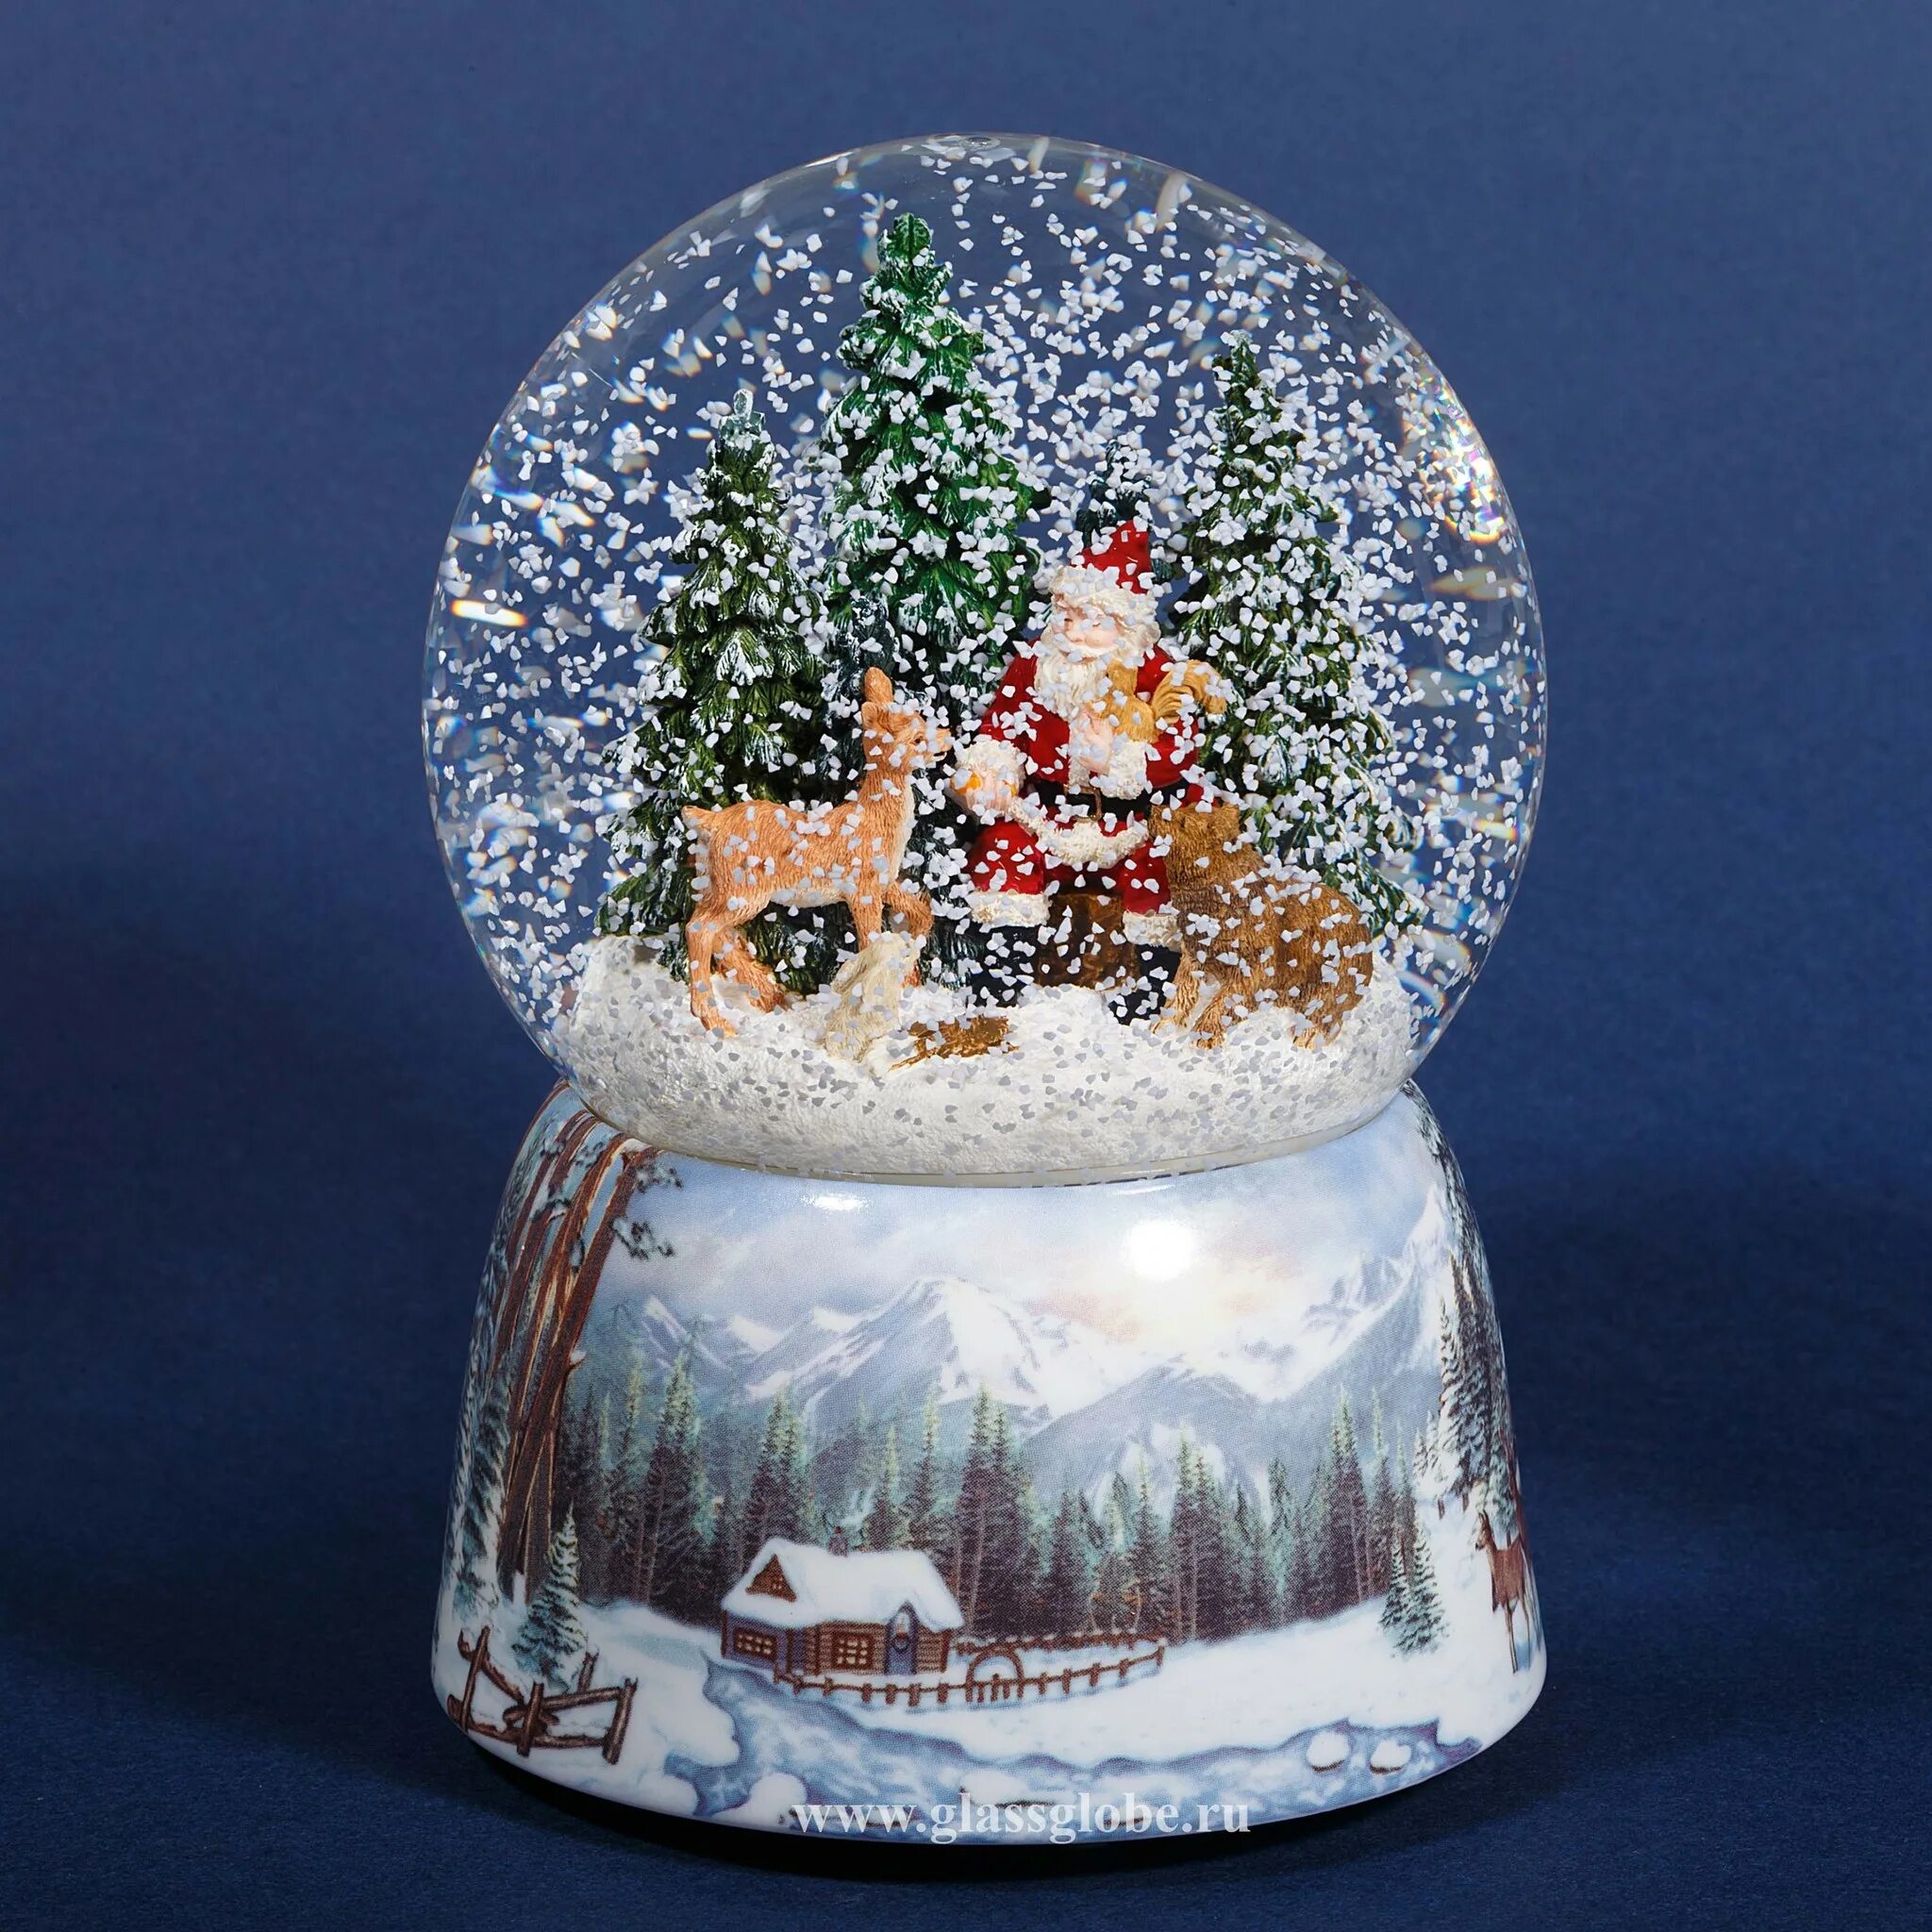 Шар падающий снег. Снежный шар Luville. Снежный шар Lefard новогодний 175-190. Стеклянный шар со снегом. Новогодний стеклянный шар со снегом.